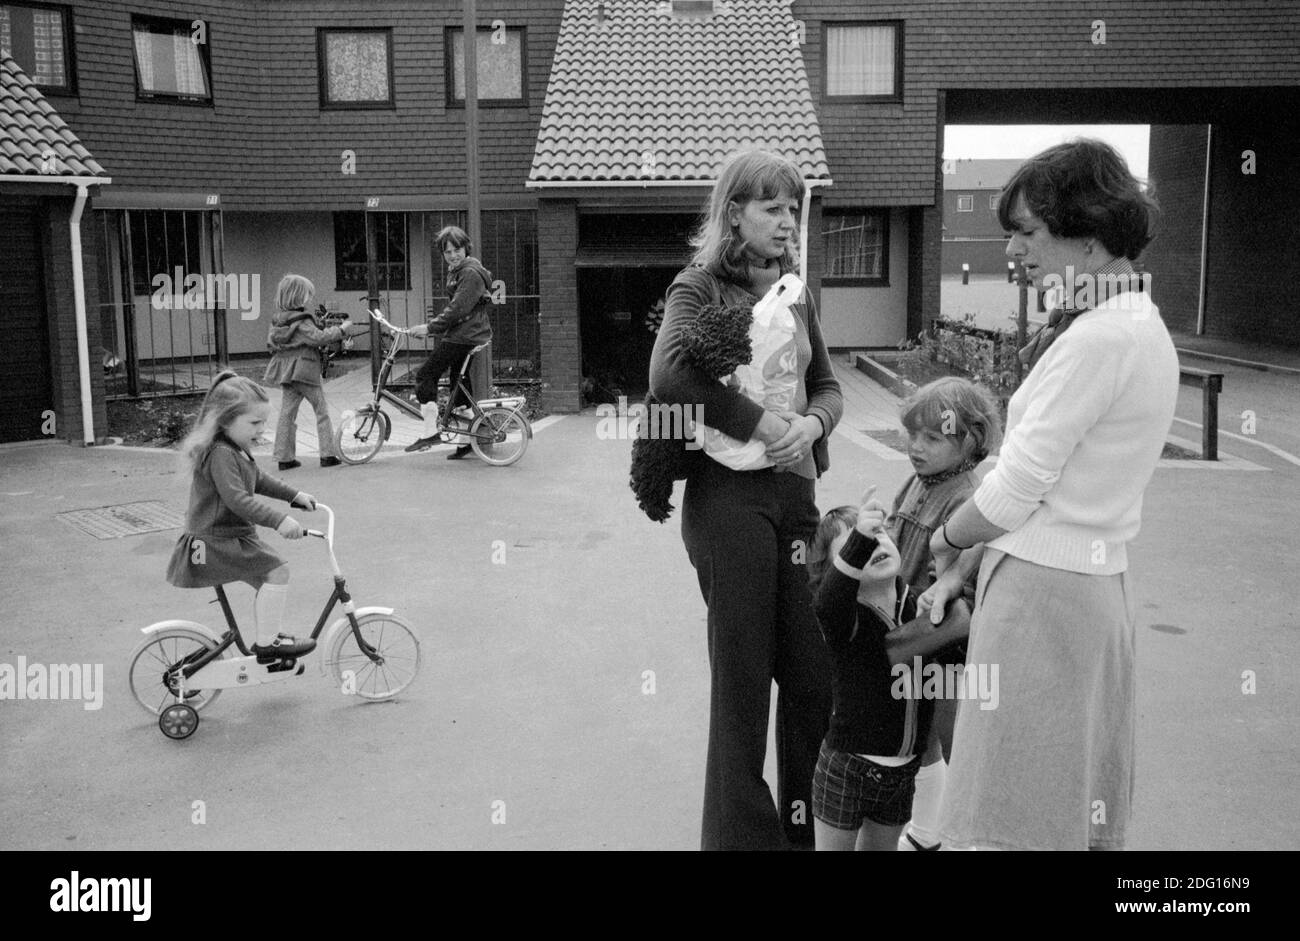 Década de 1970 Desarrollo de viviendas modernas Reino Unido. Dos mujeres locales con niños charlando en la calle libre de coches. Niños jugando en sus bicicletas. 1977 Inglaterra. HOMER SYKES Foto de stock